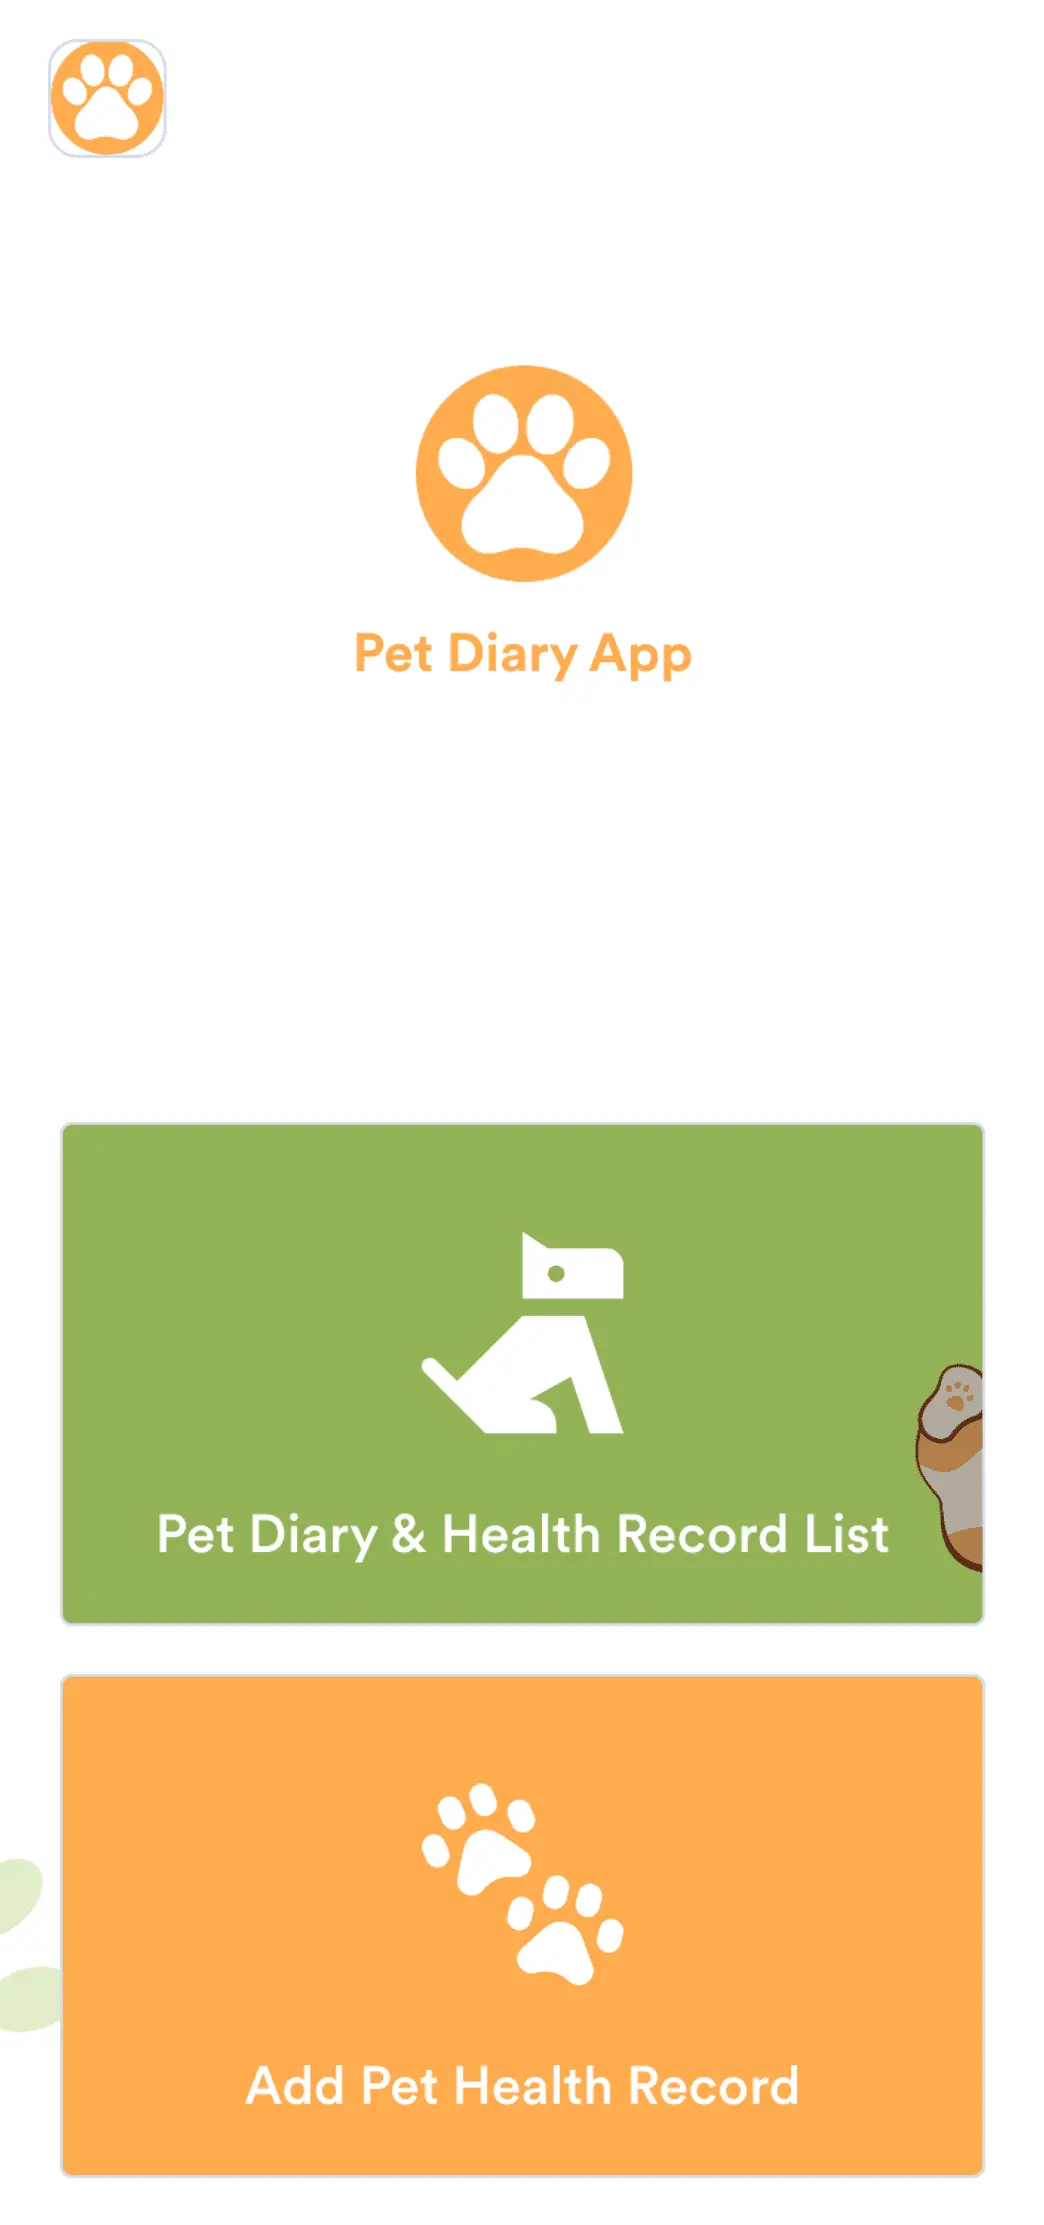 Pet Diary App